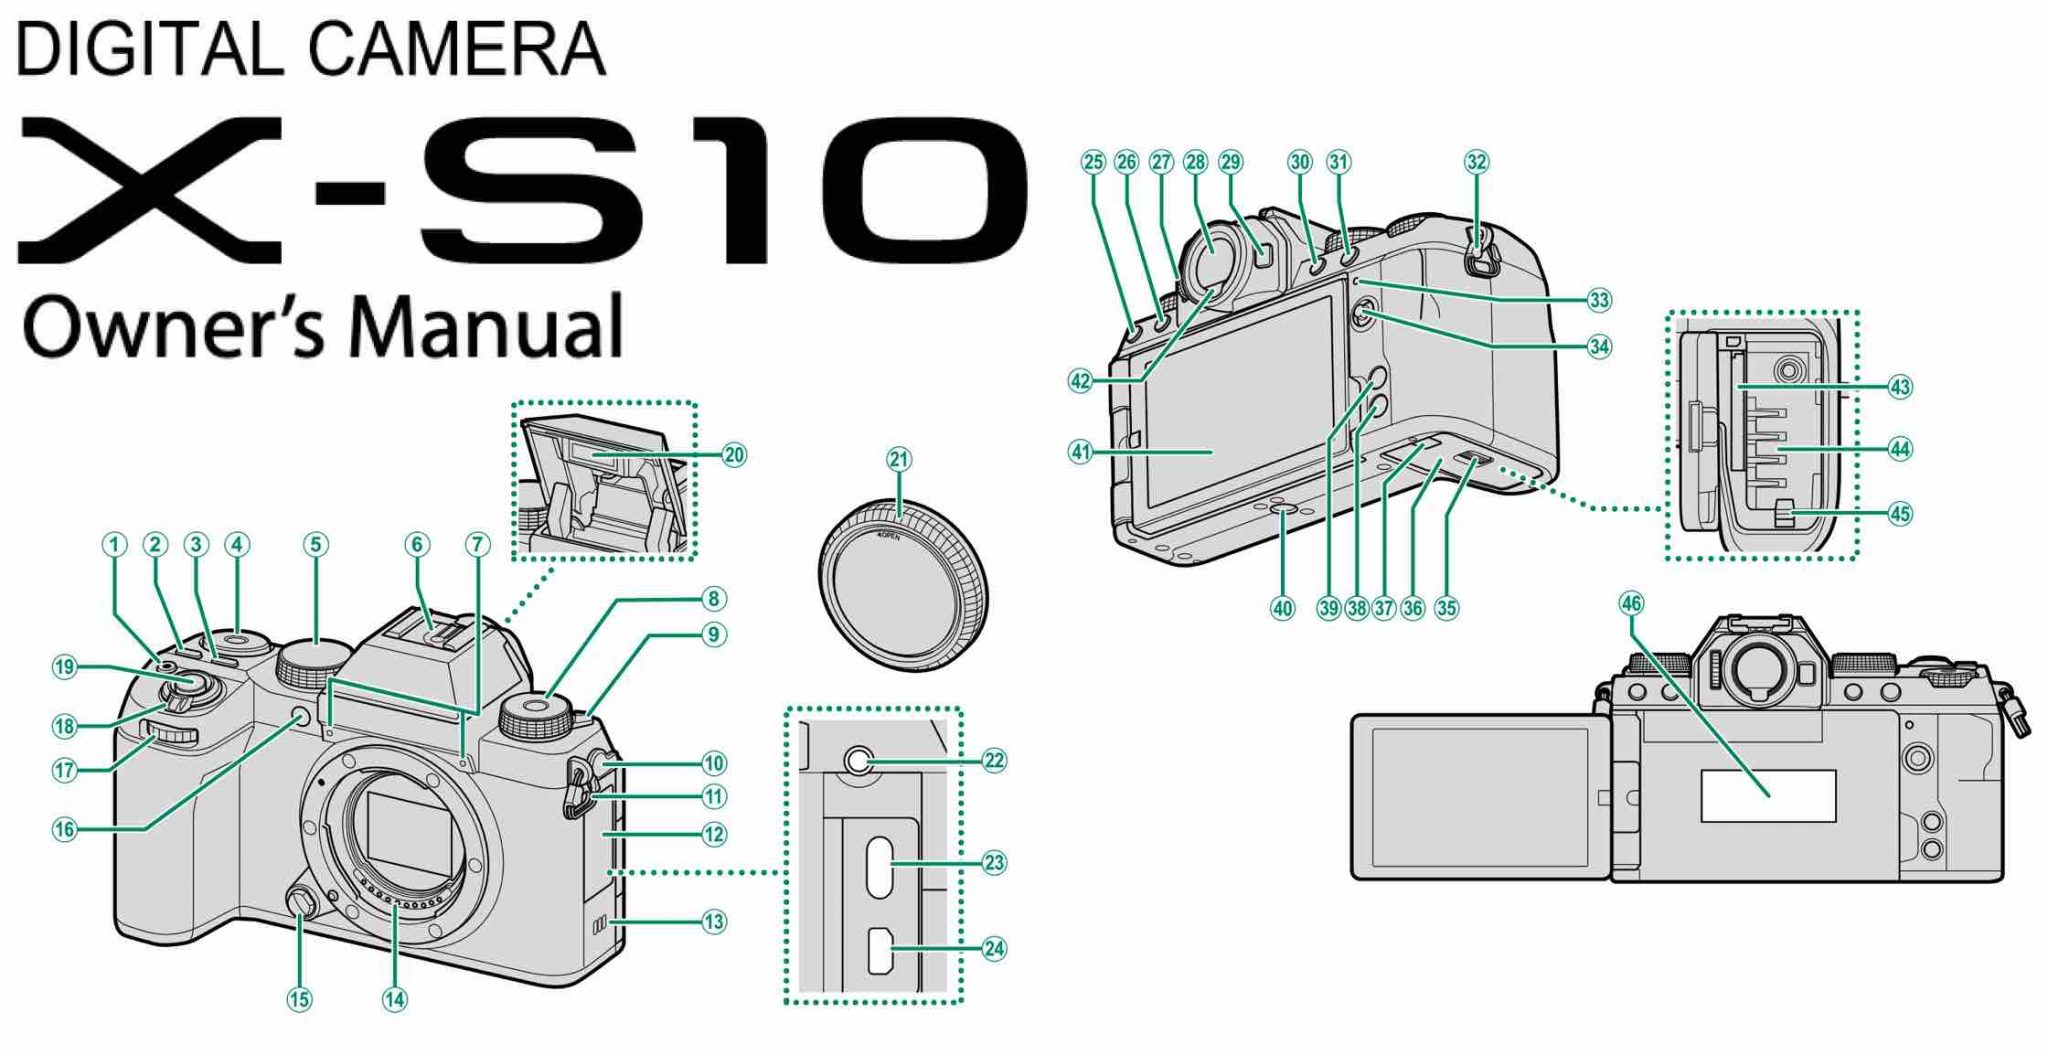 Fujifilm X-S10 Owner's Manual Released - Fuji Rumors